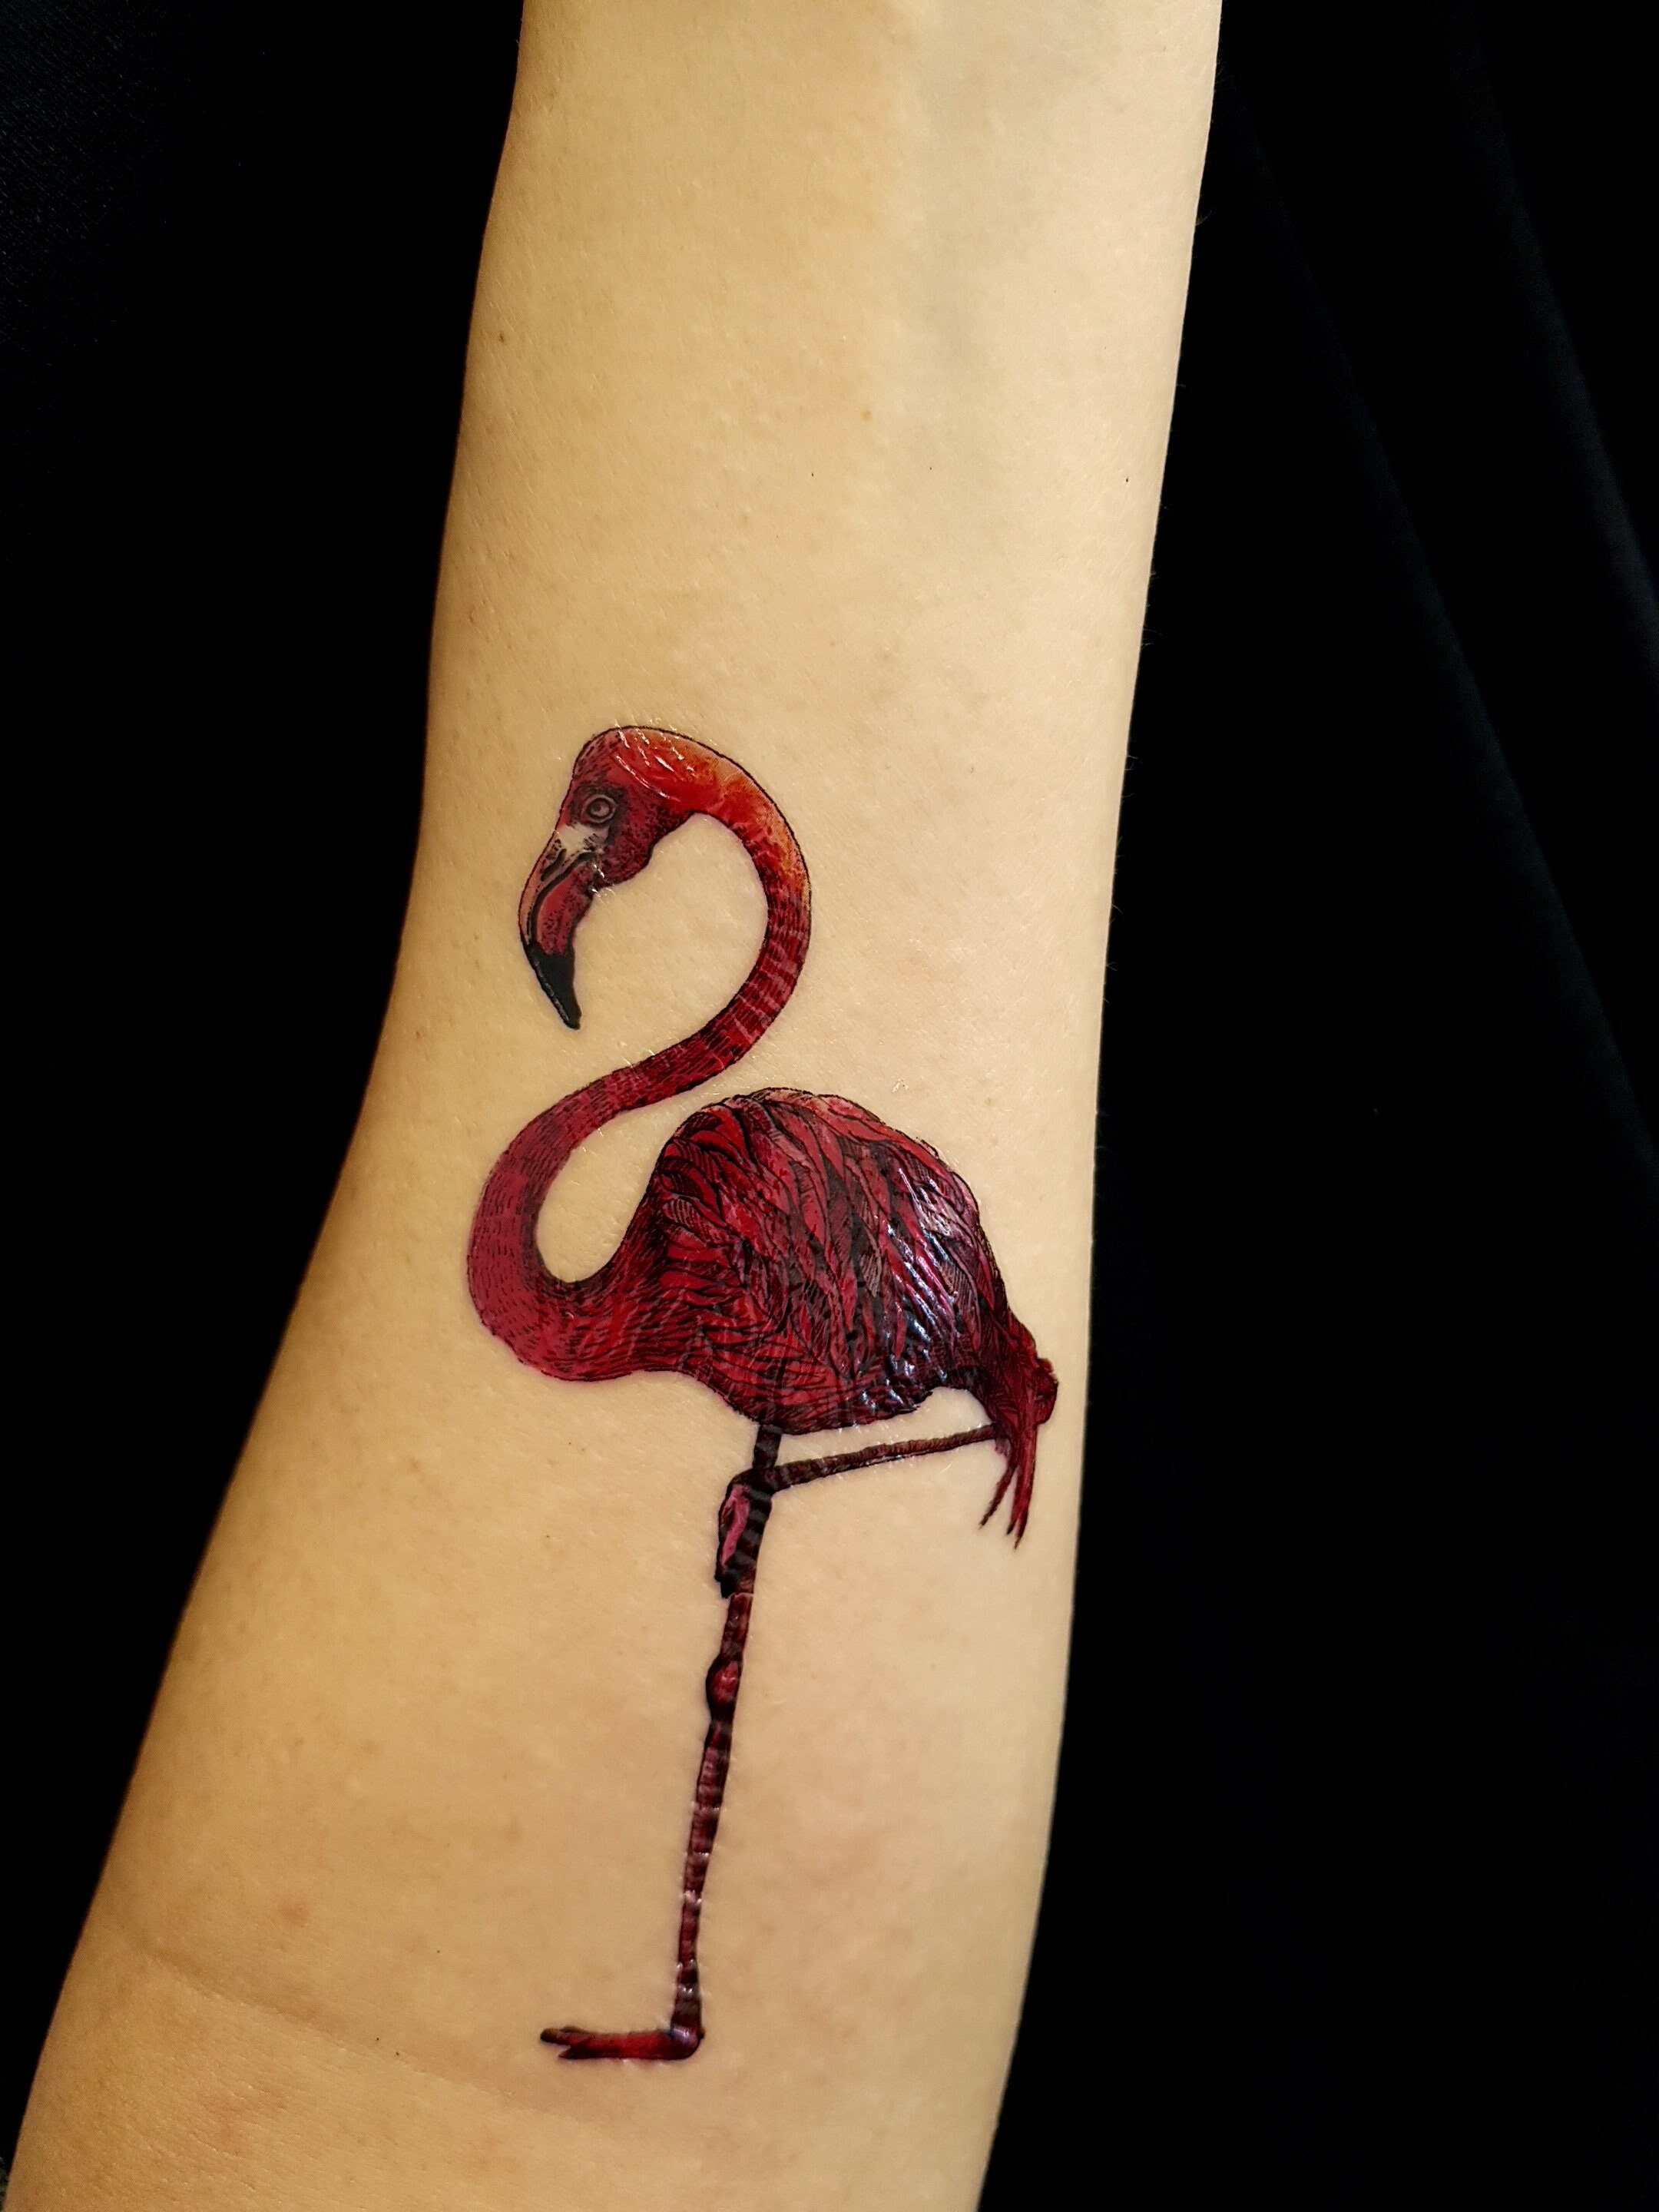 23 Fancy Flamingo Tattoo Ideas For Women - TattooGlee | Flamingo tattoo,  Fancy flamingo, Tattoos